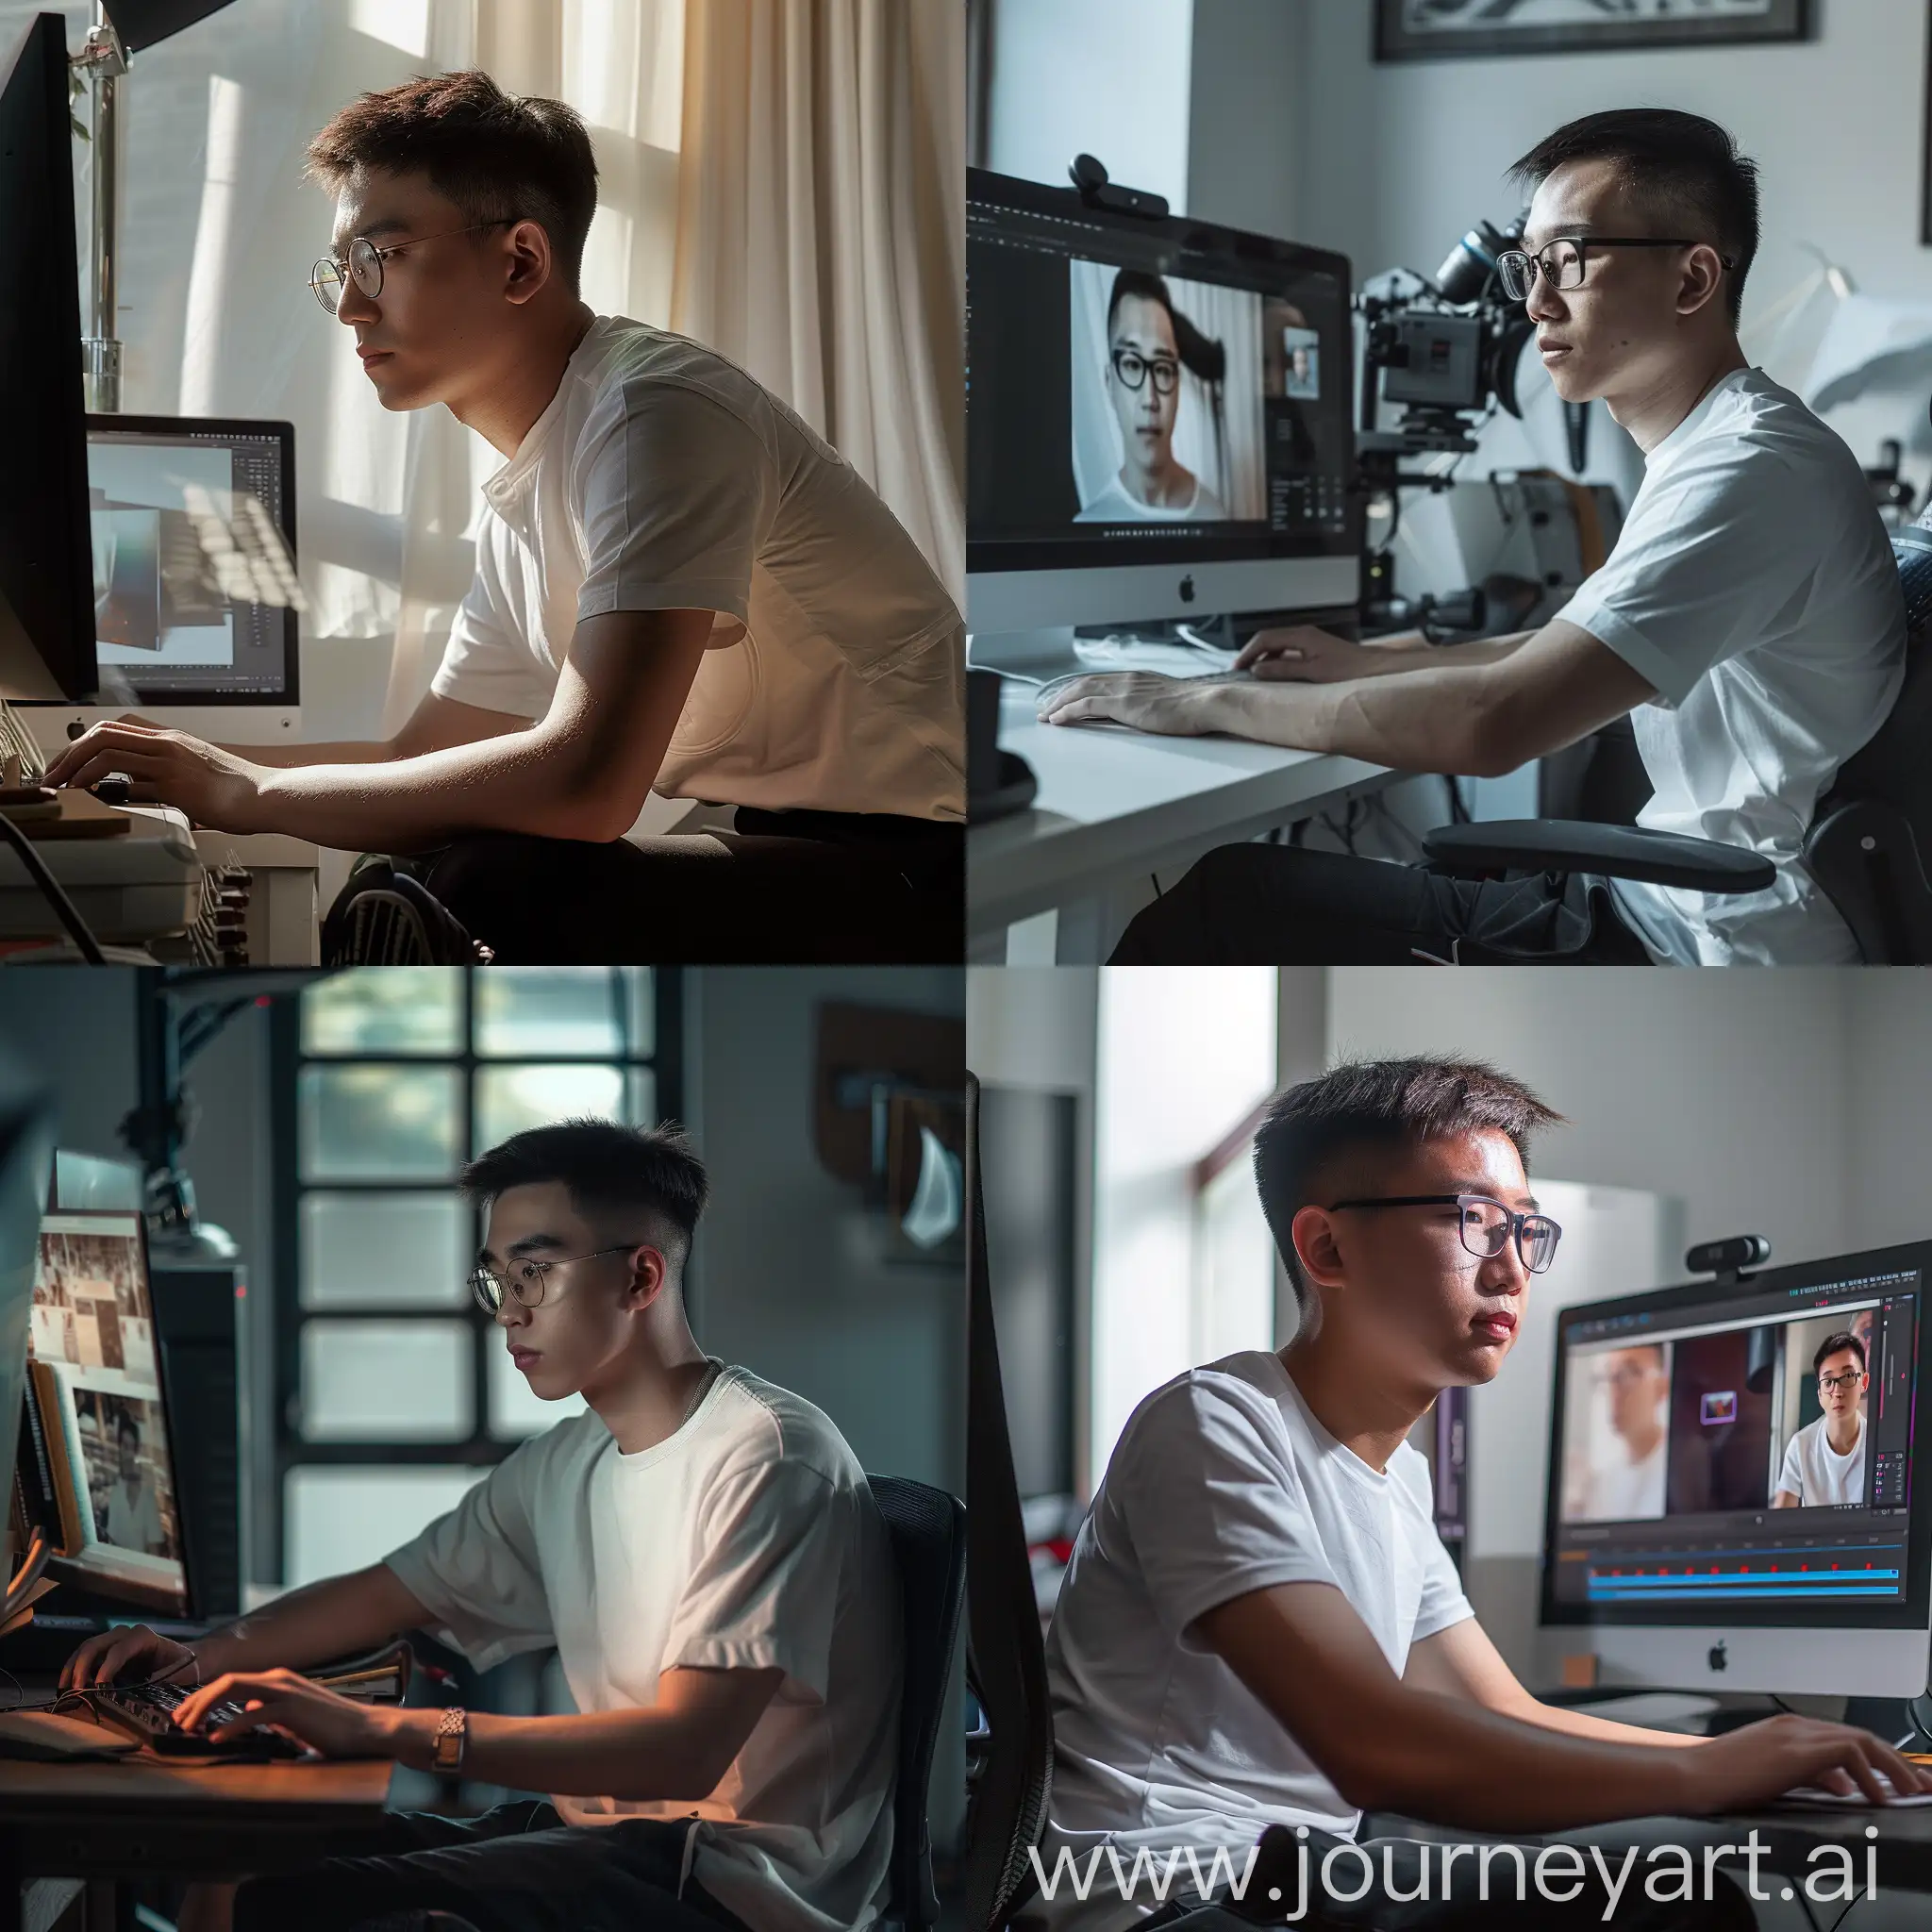 制作一个在海马体照相馆上班的修图师照片，男生，戴眼镜，短发，中国男生，白色短袖黑色裤子，坐在电脑前。光线温和，细节丰富。